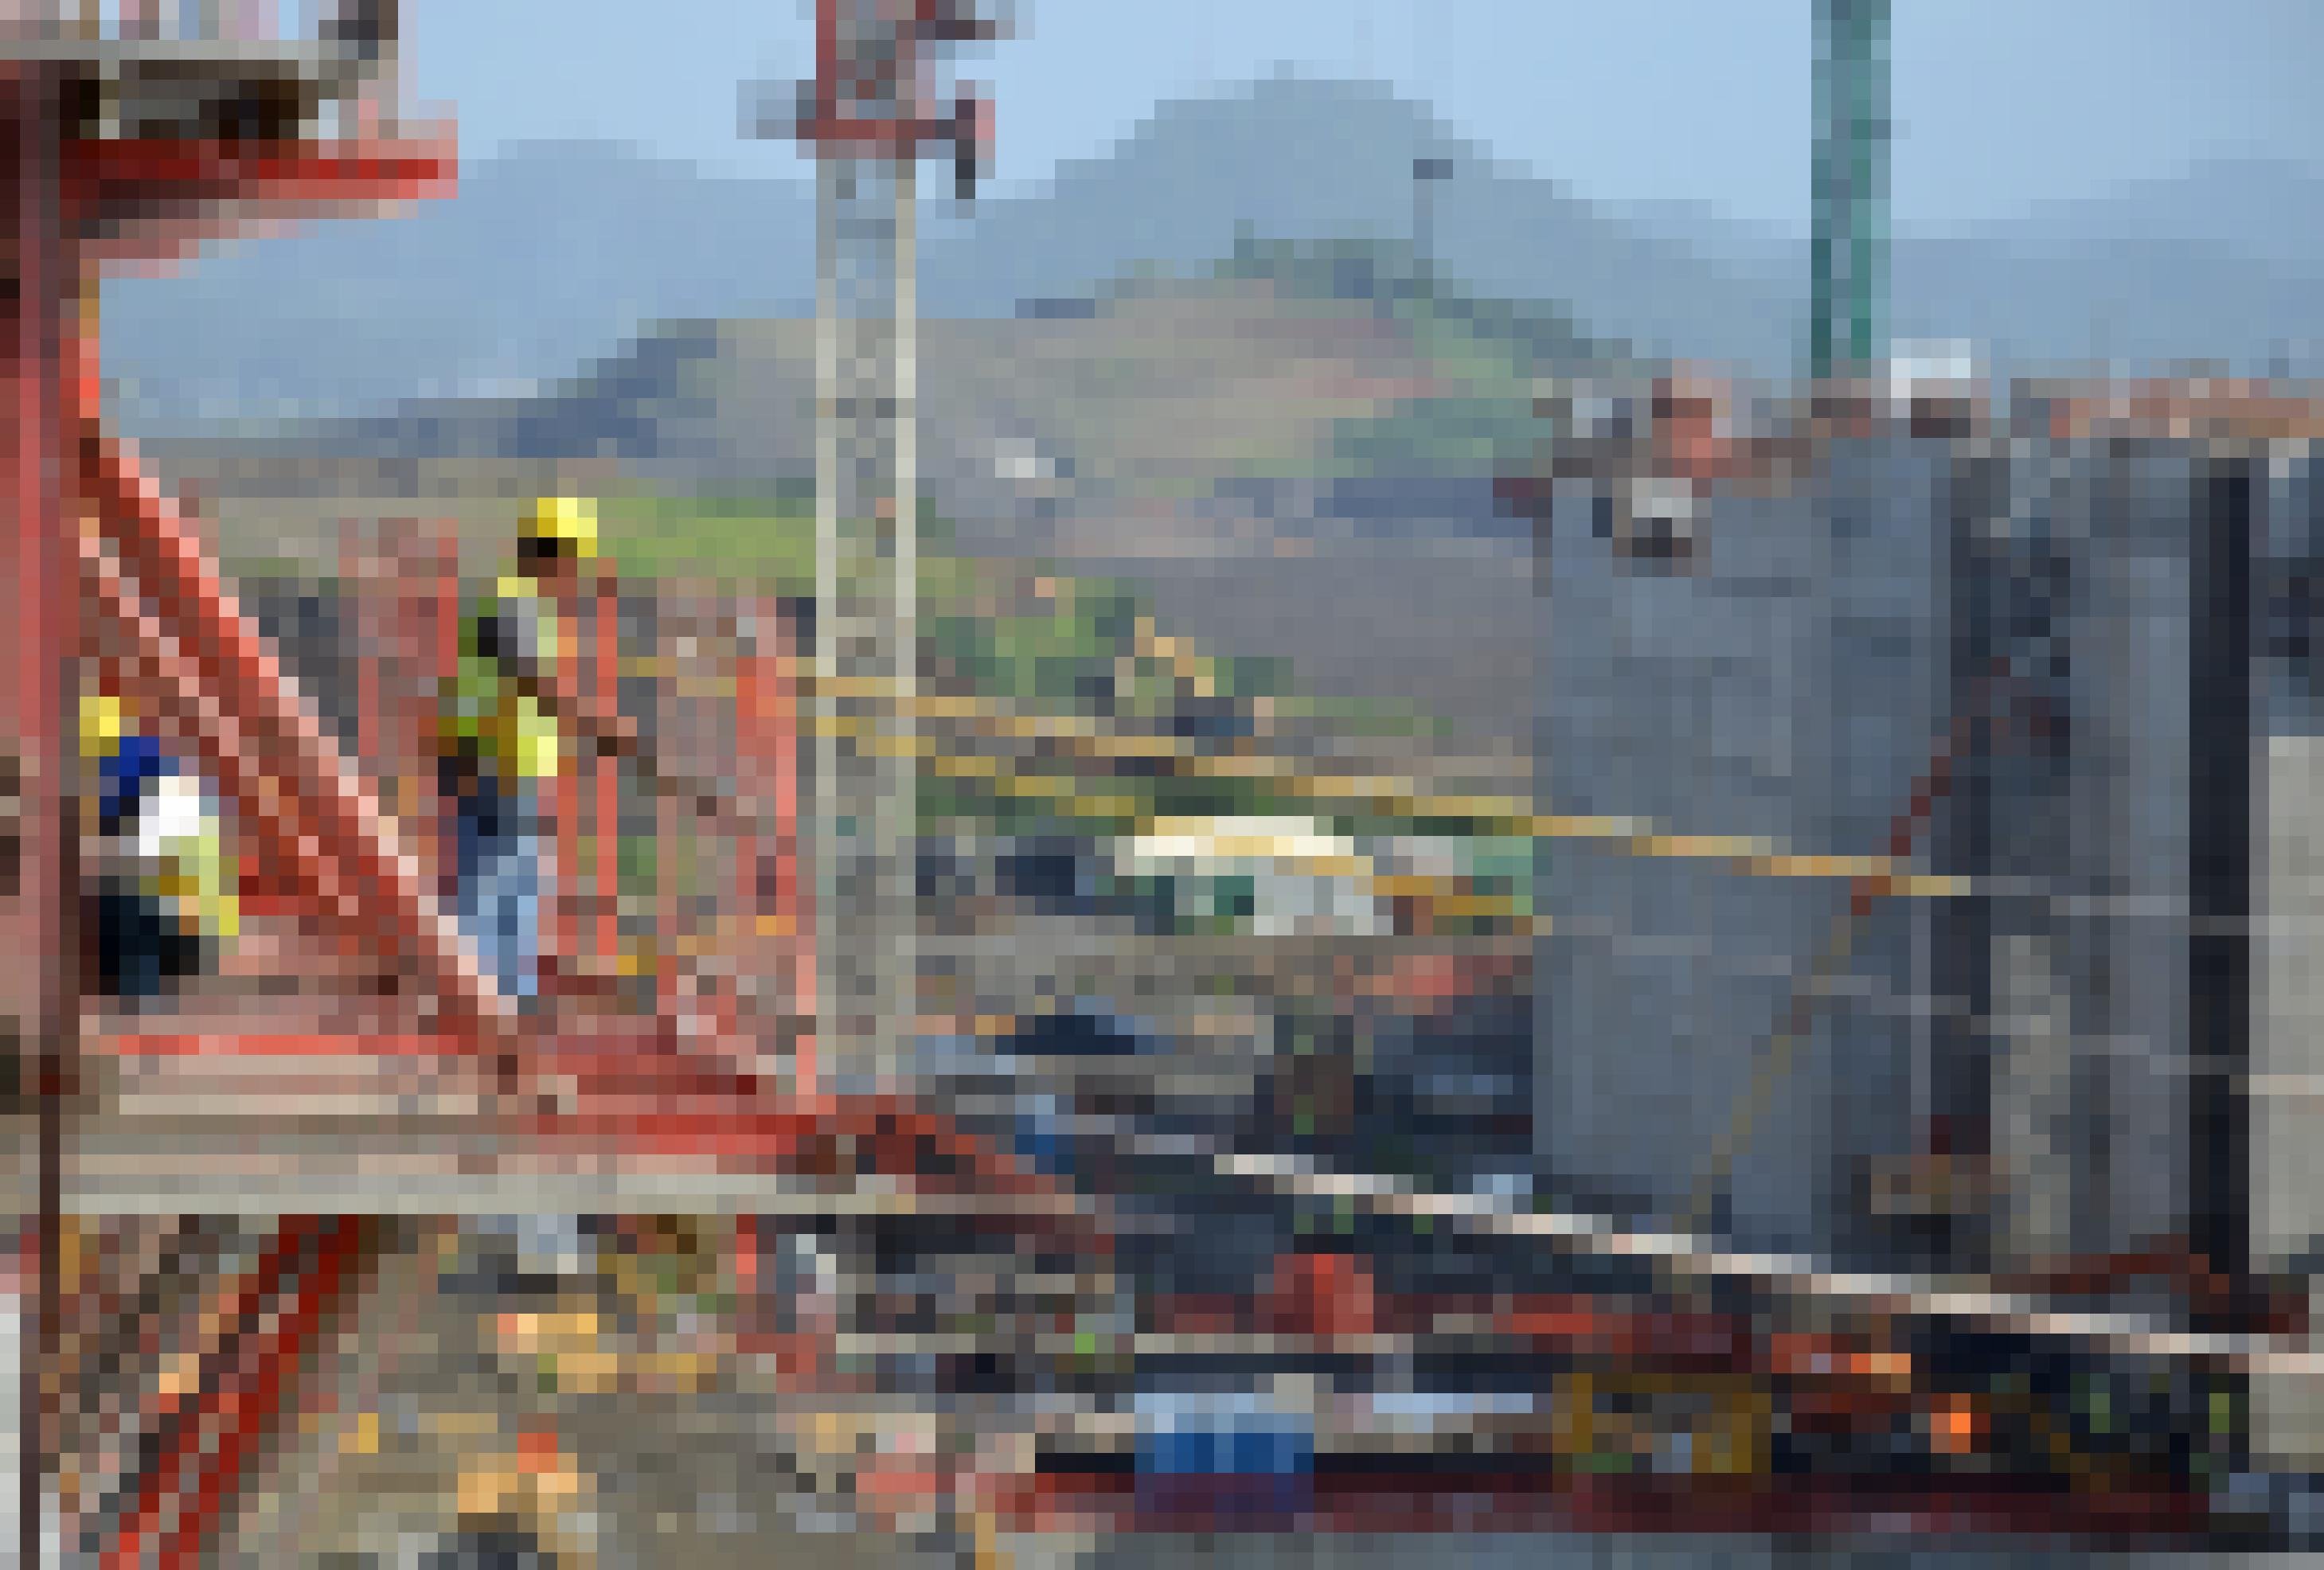 Ein Bauarbeiter auf einem Gerüst in der Höhe blickt herunter auf eine riesige Betonwanne der künftigen Schleusen.